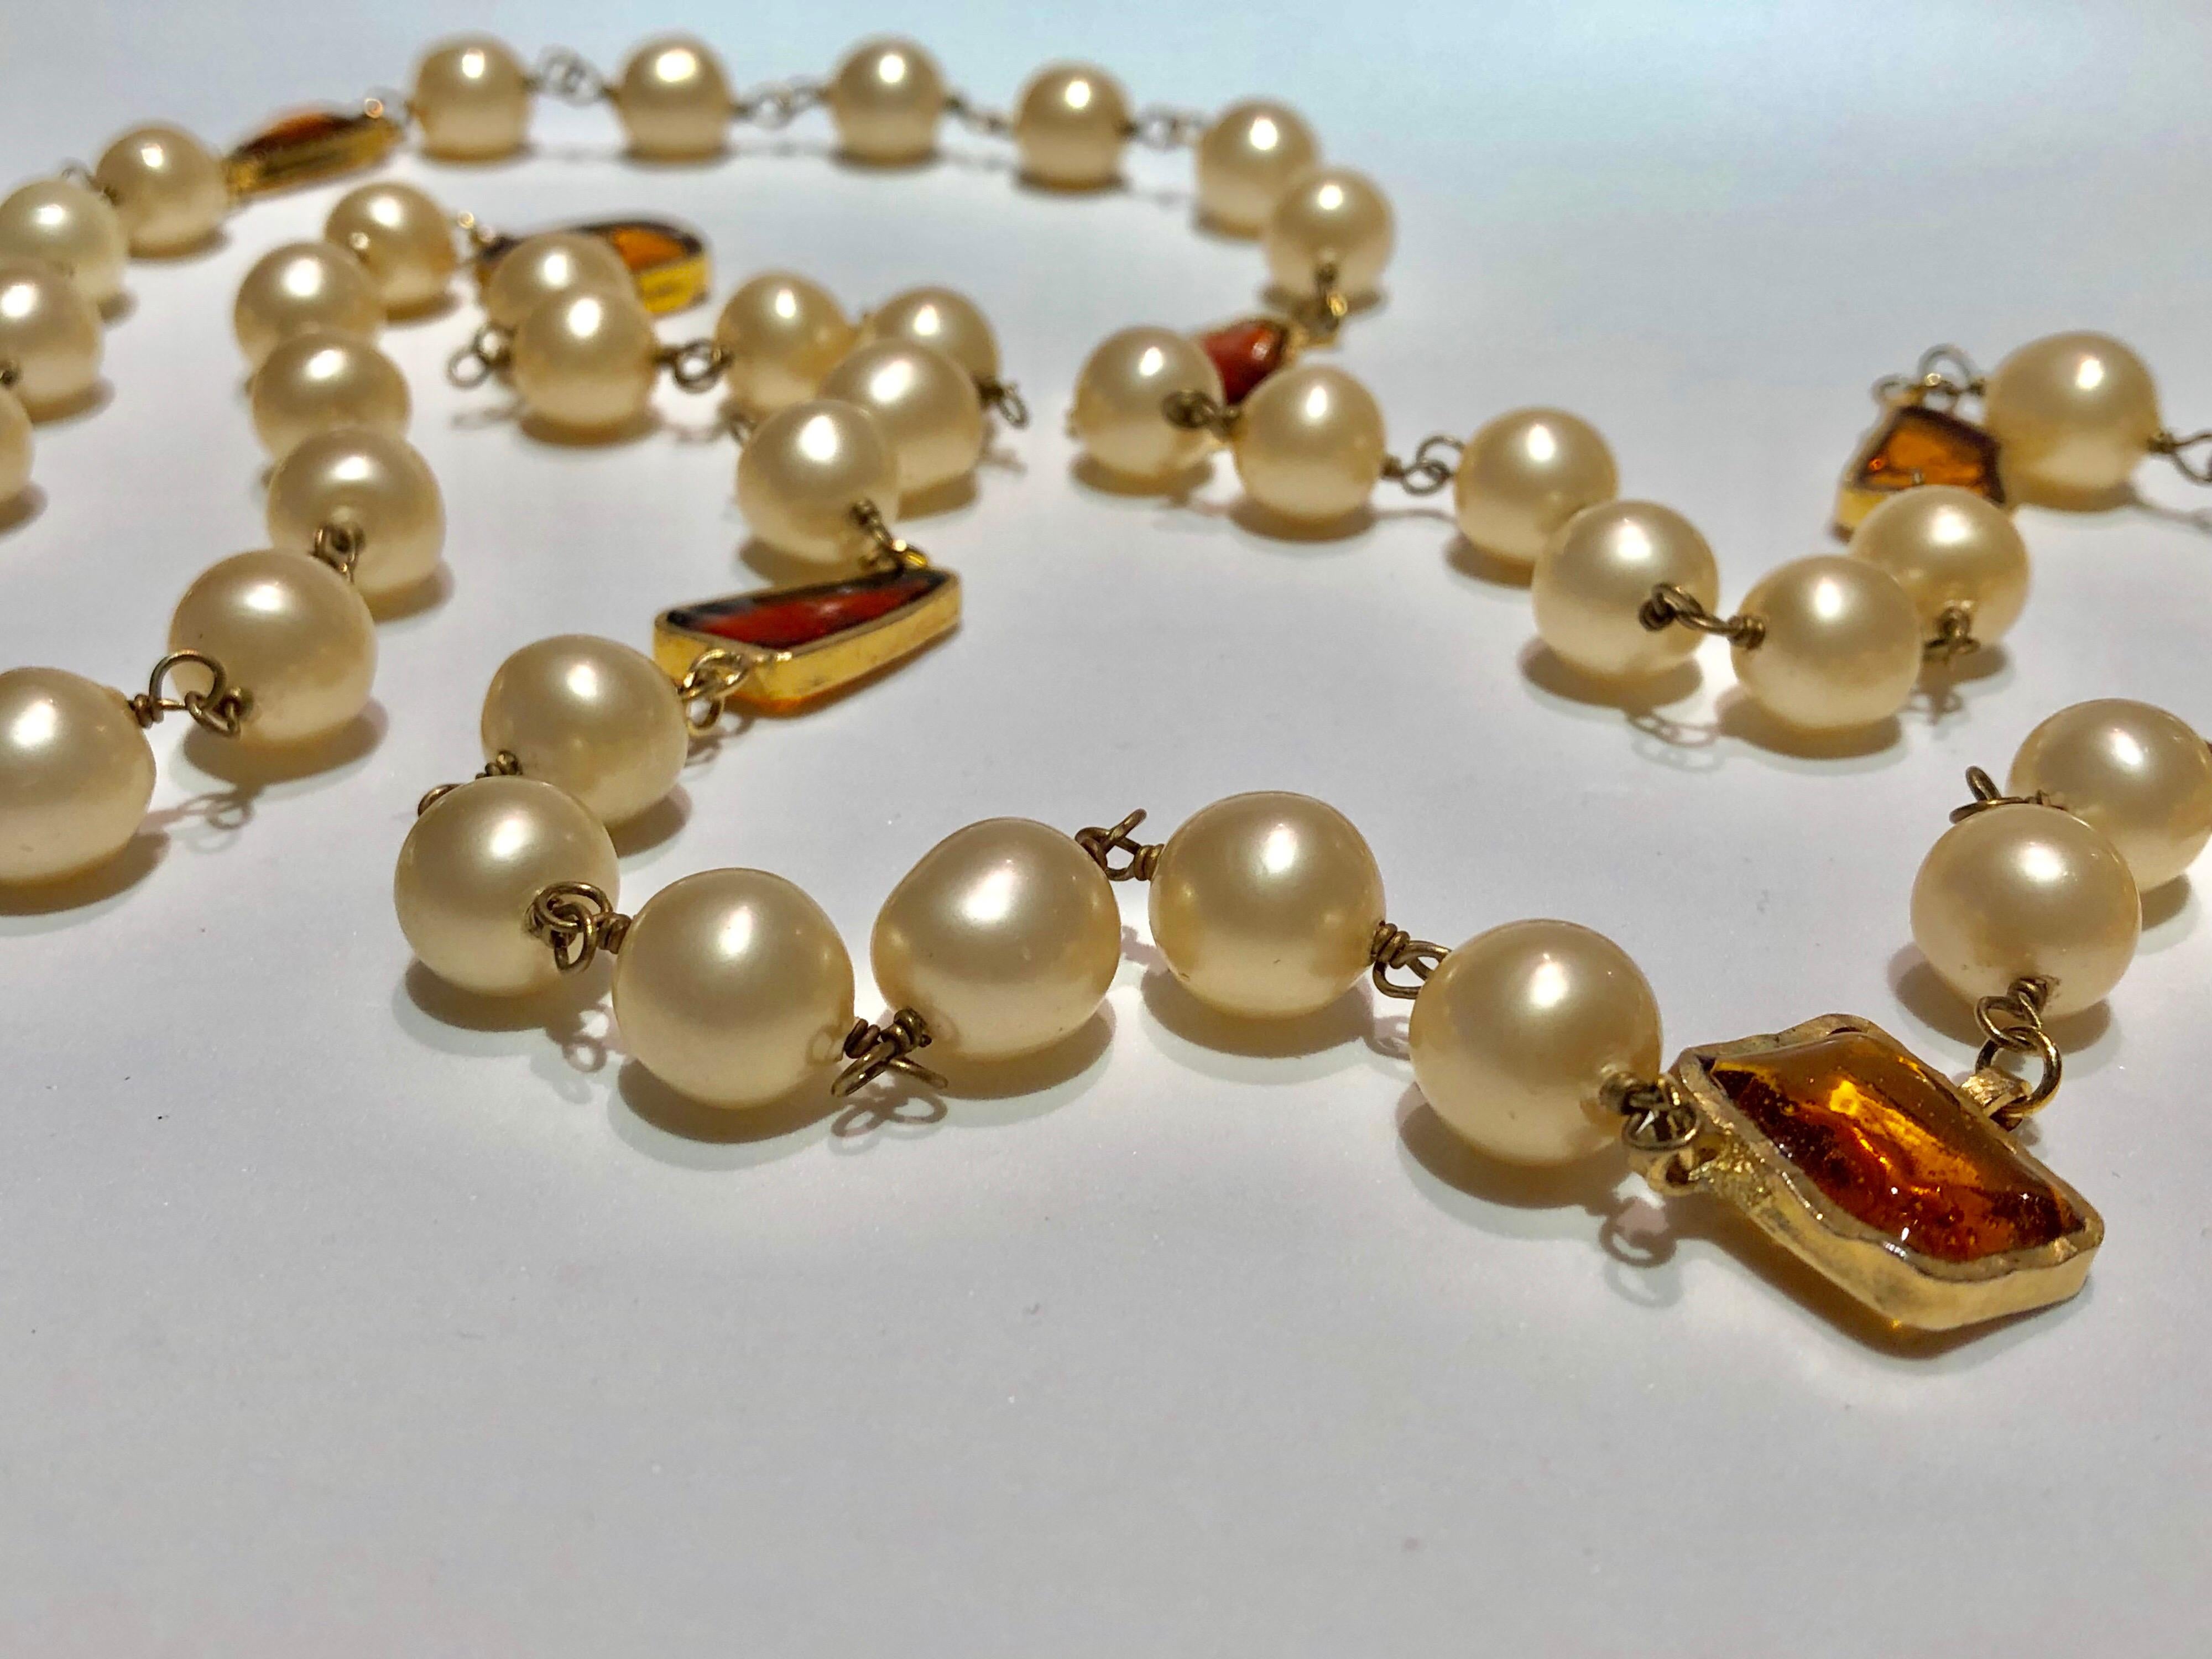 Rare collier de perles crème vintage Coco Chanel 1994 automne/hiver - cet important collier classique/contemporain de Chanel est composé de grandes perles en faux verre de couleur crème. À la manière de Coco, le collier est rehaussé de grandes